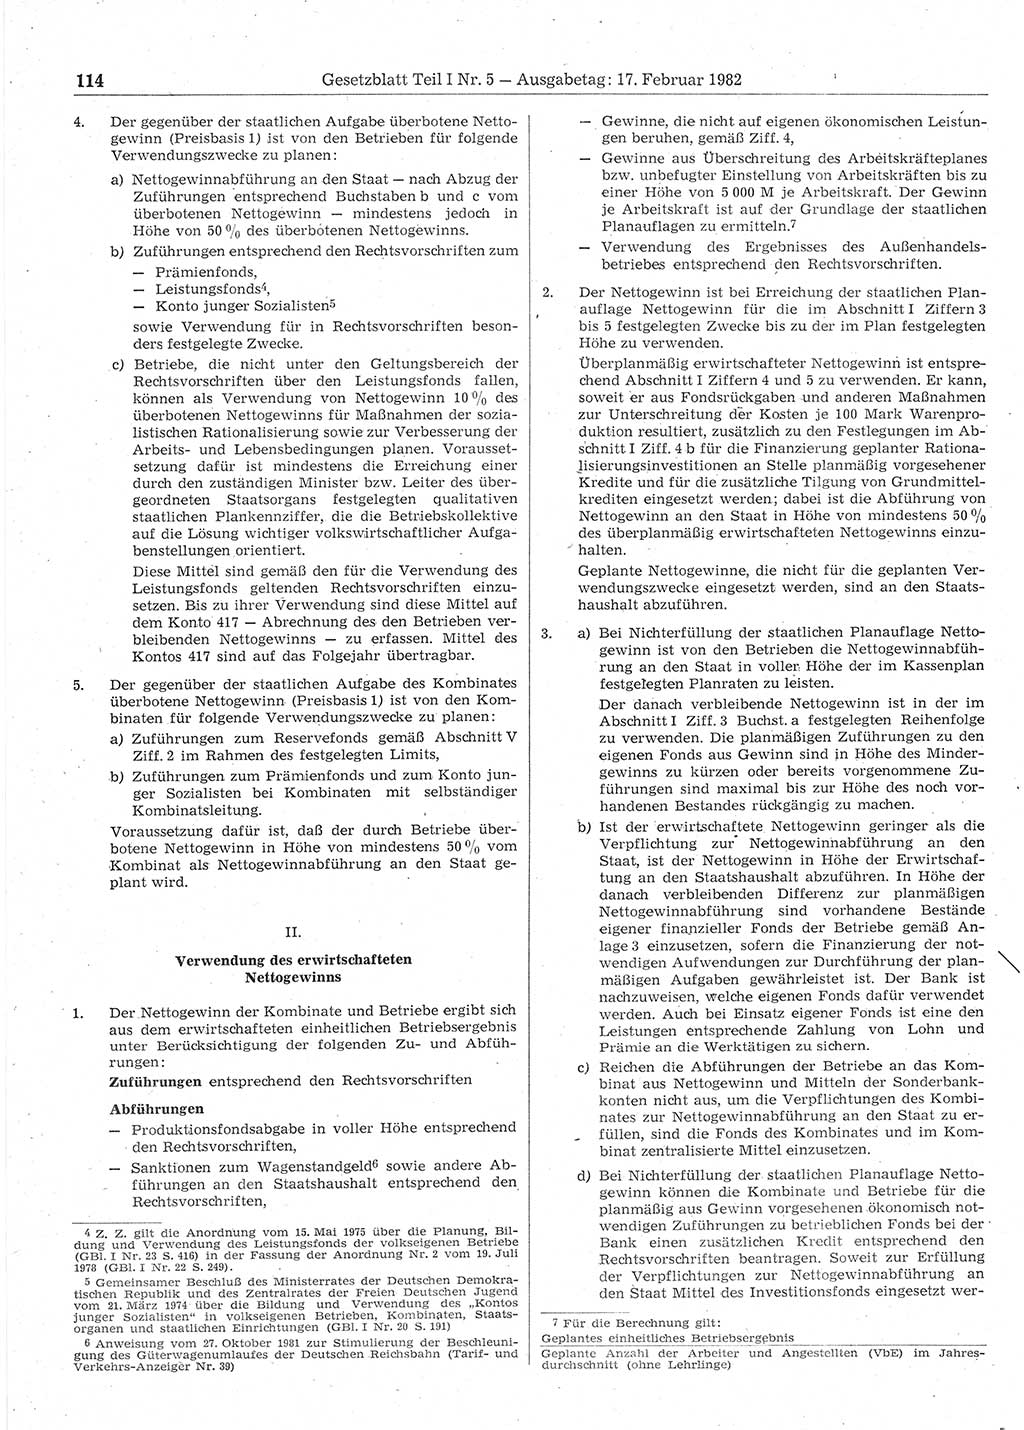 Gesetzblatt (GBl.) der Deutschen Demokratischen Republik (DDR) Teil Ⅰ 1982, Seite 114 (GBl. DDR Ⅰ 1982, S. 114)